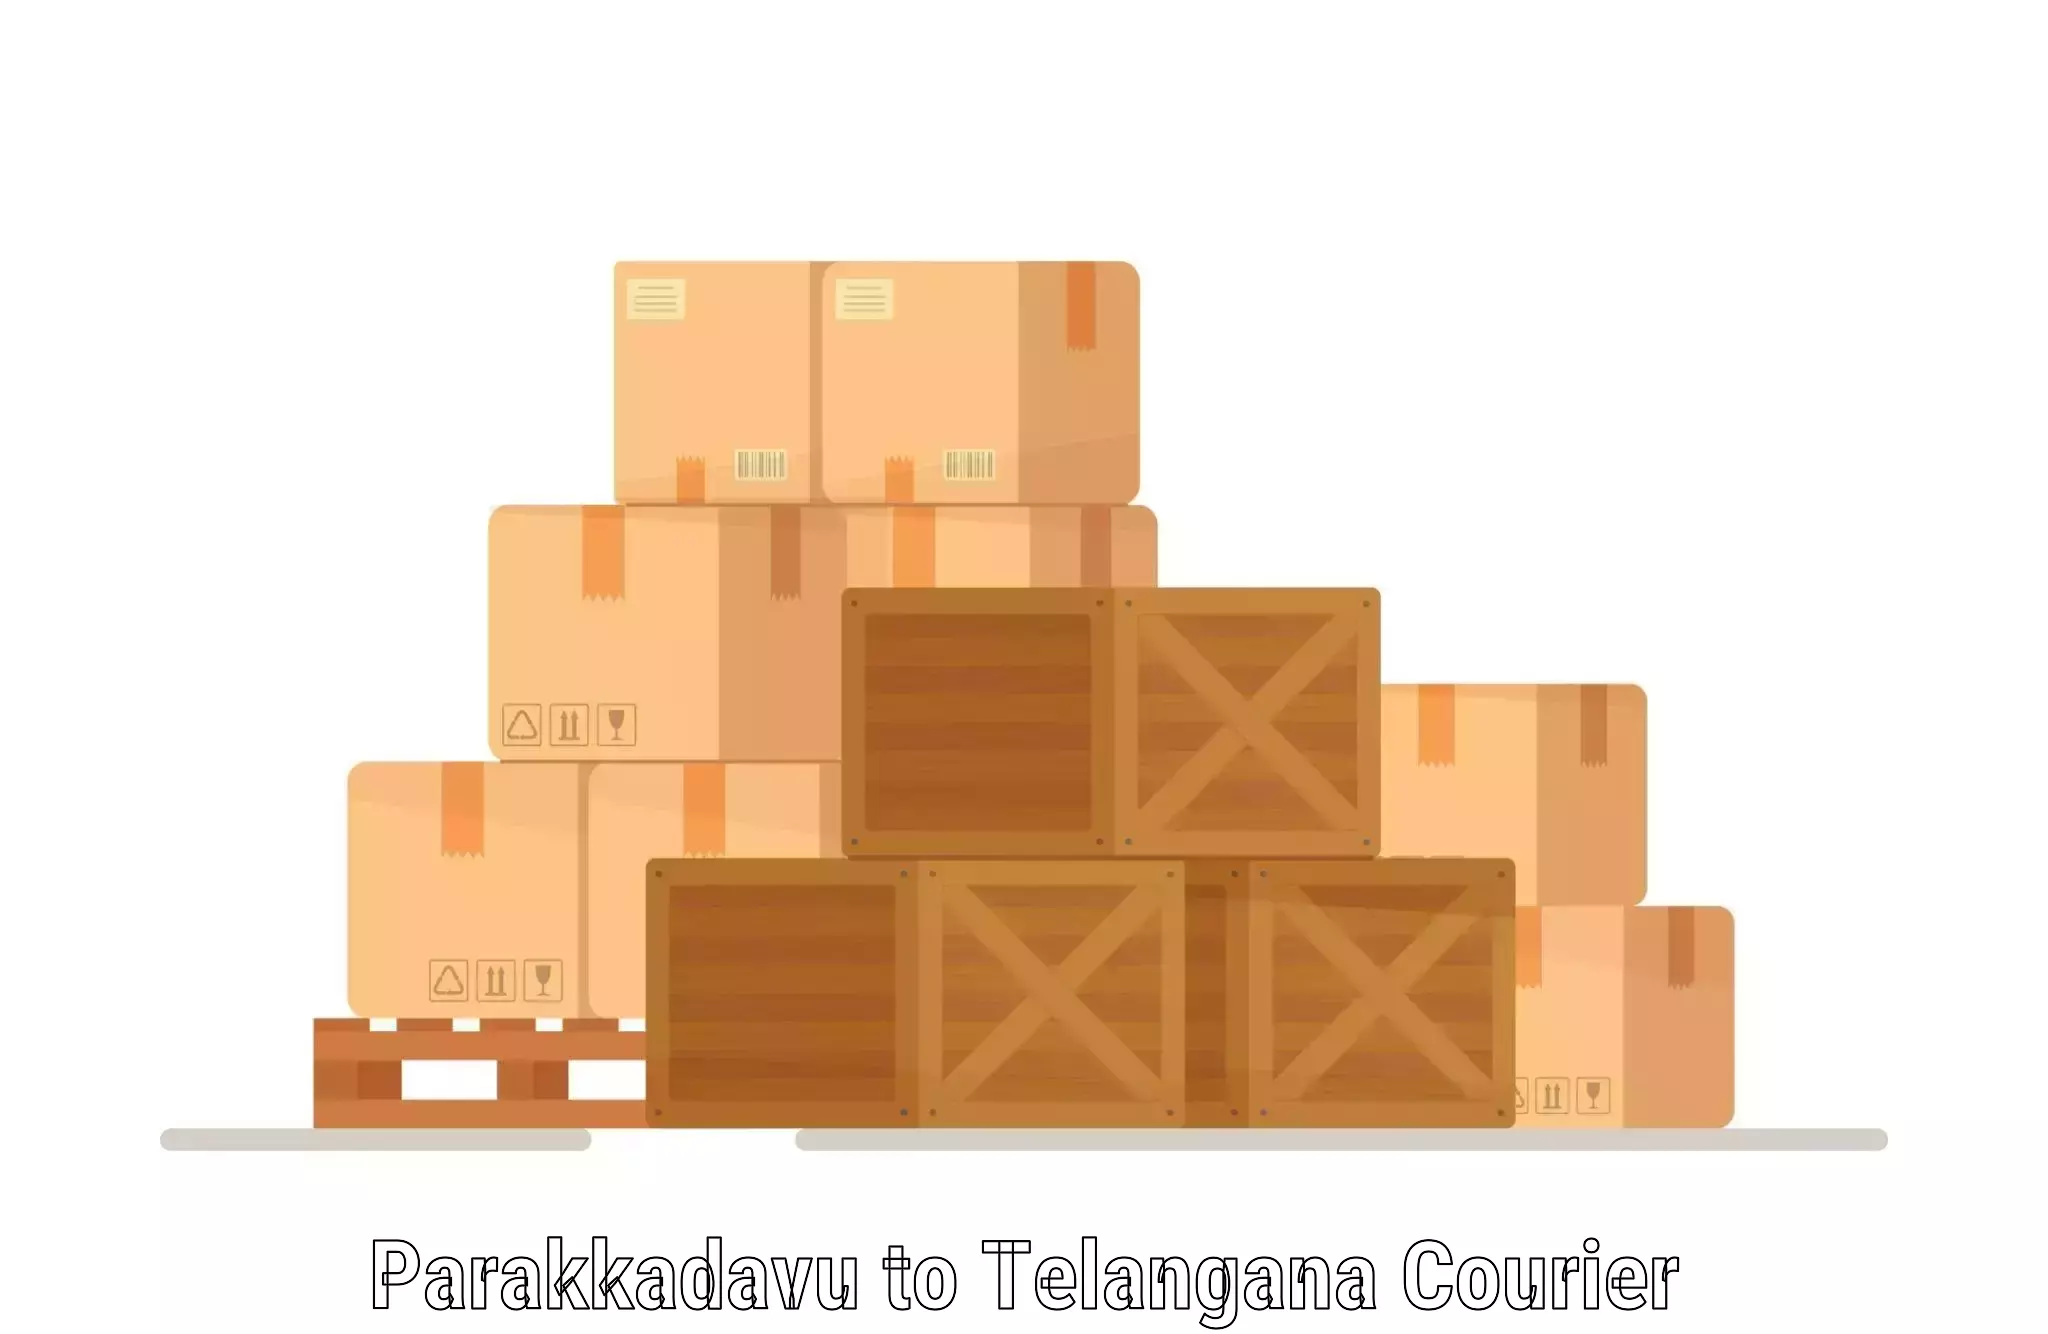 Tailored delivery services Parakkadavu to Gangadhara